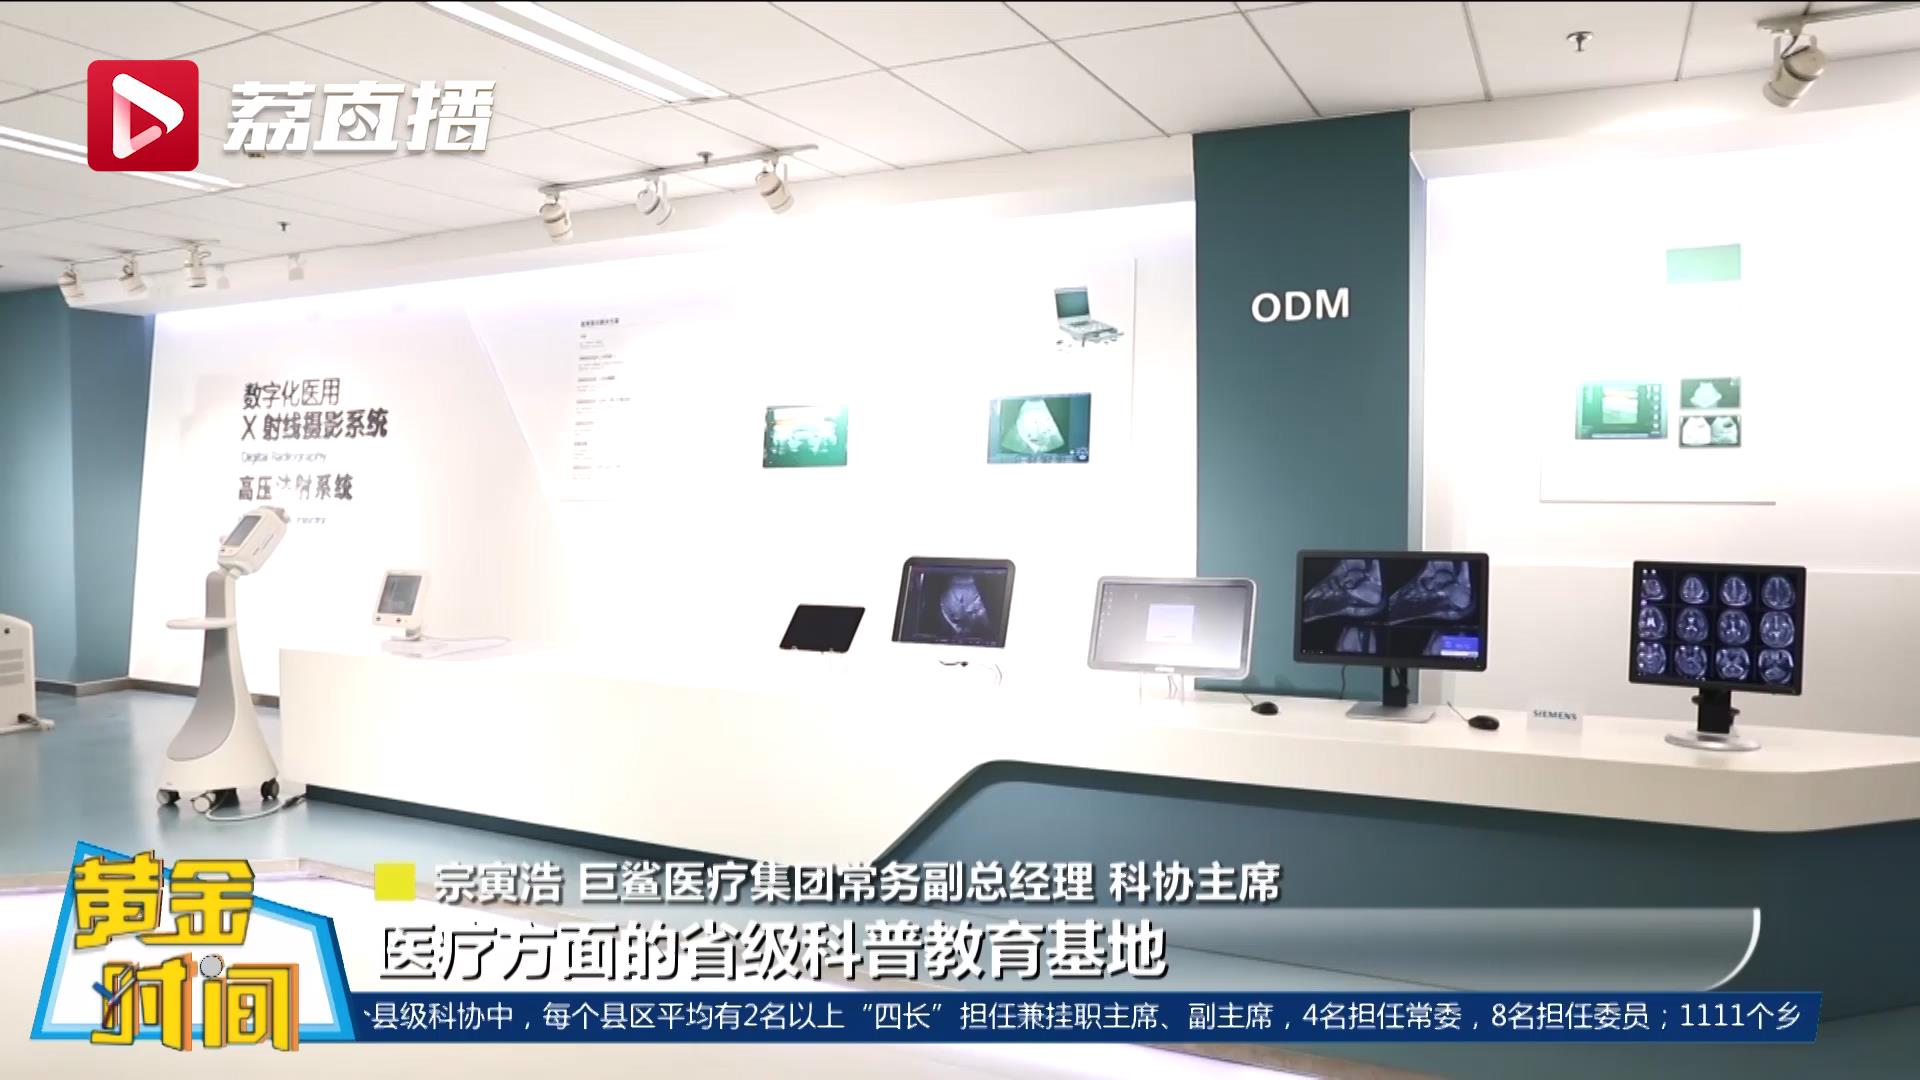 黄金时间丨南京一企业建自己的科协组织 南京一企业展厅成省级科普教育基地